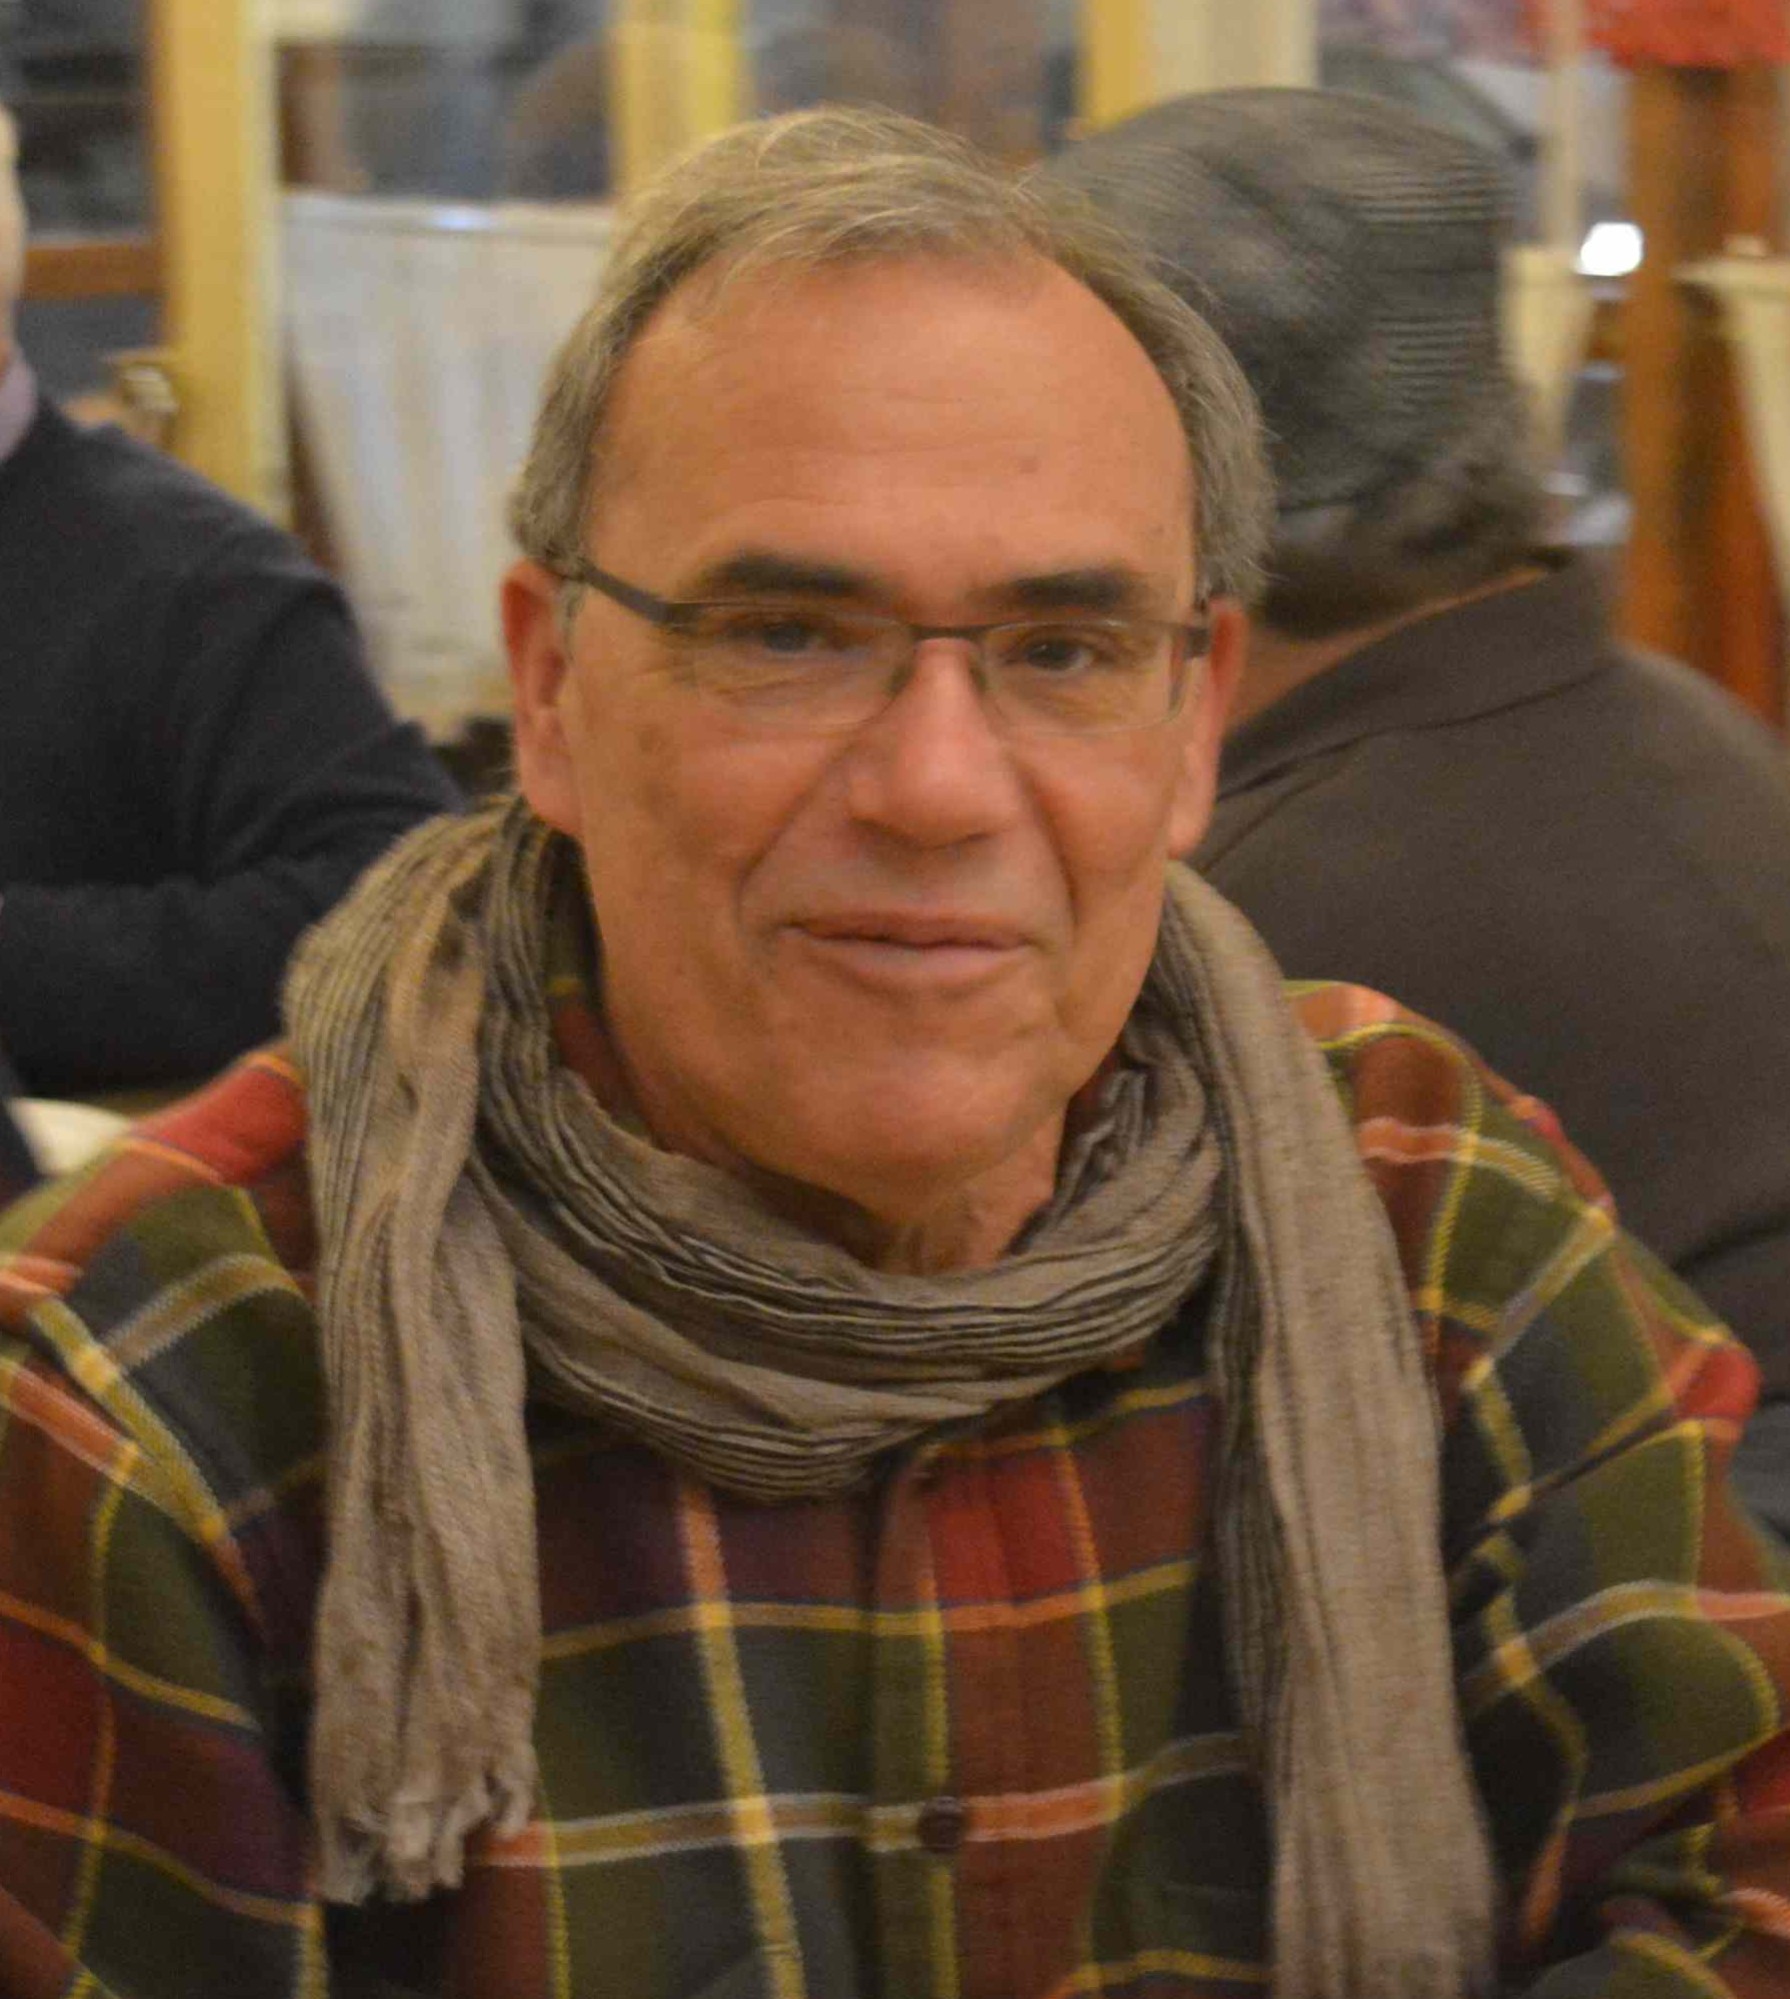 Δημήτρης Κωστόπουλος, συγγραφέας - Η Κιμωλία - Δρόμος της Αριστεράς